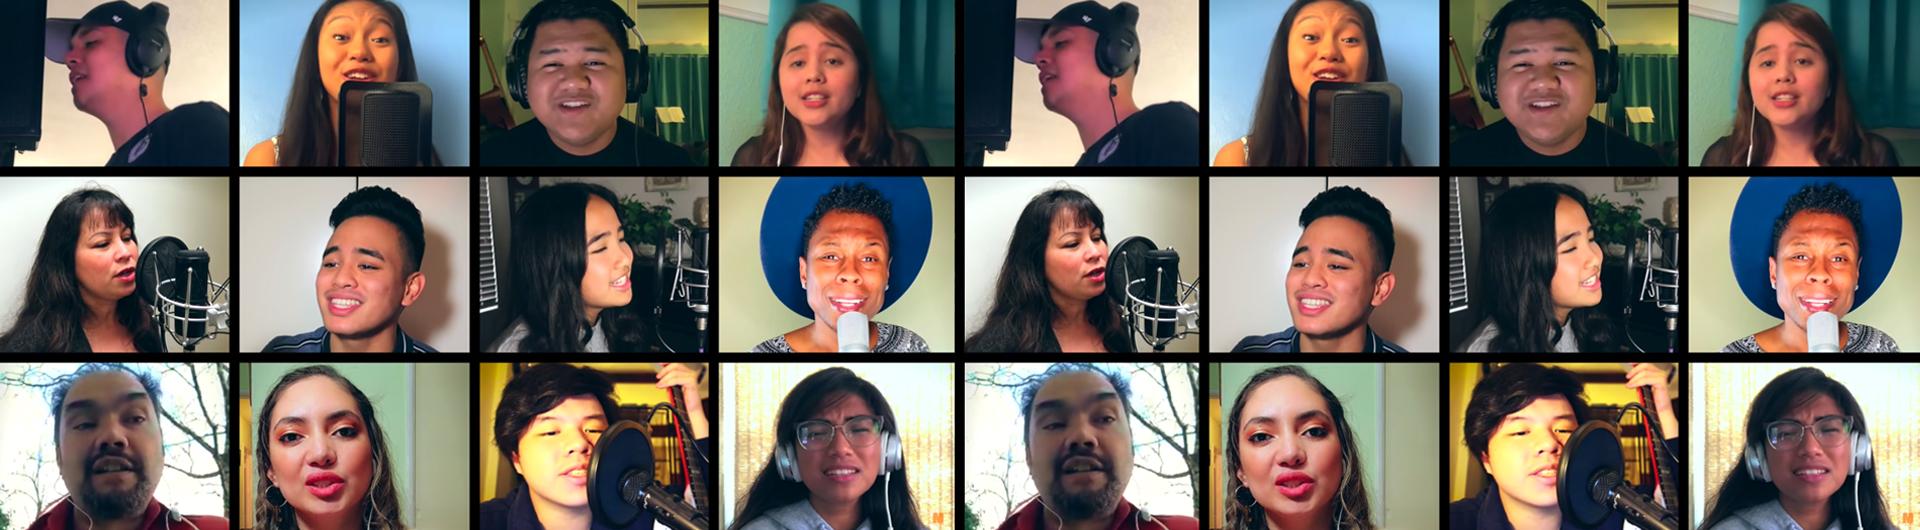 CSULB Student Creates Virtual Choir Video 